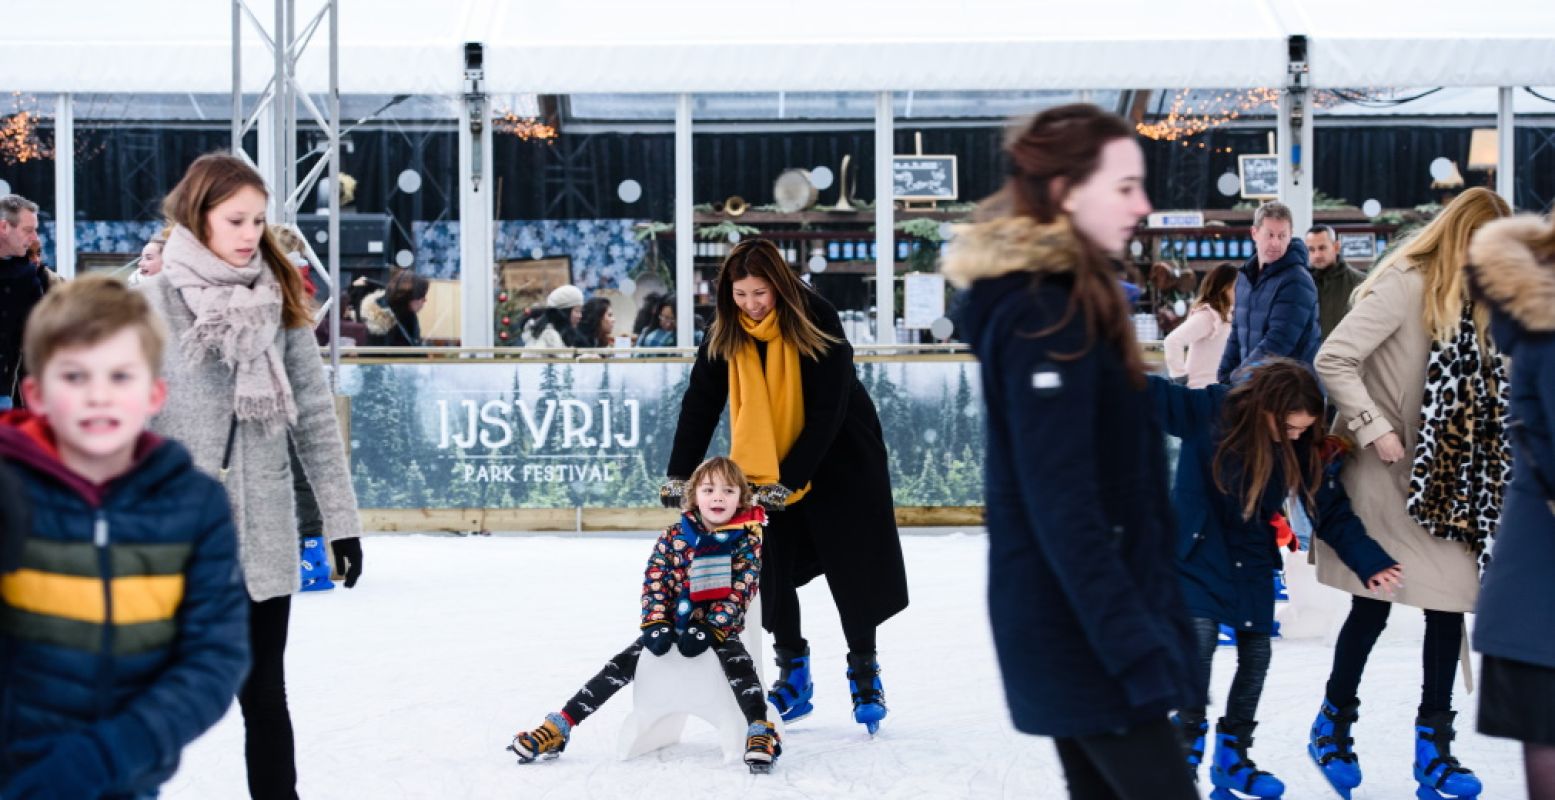 De schaatsbaan in Rotterdam is ook open op Nieuwjaarsdag. Foto: Annemarie van der Togt.